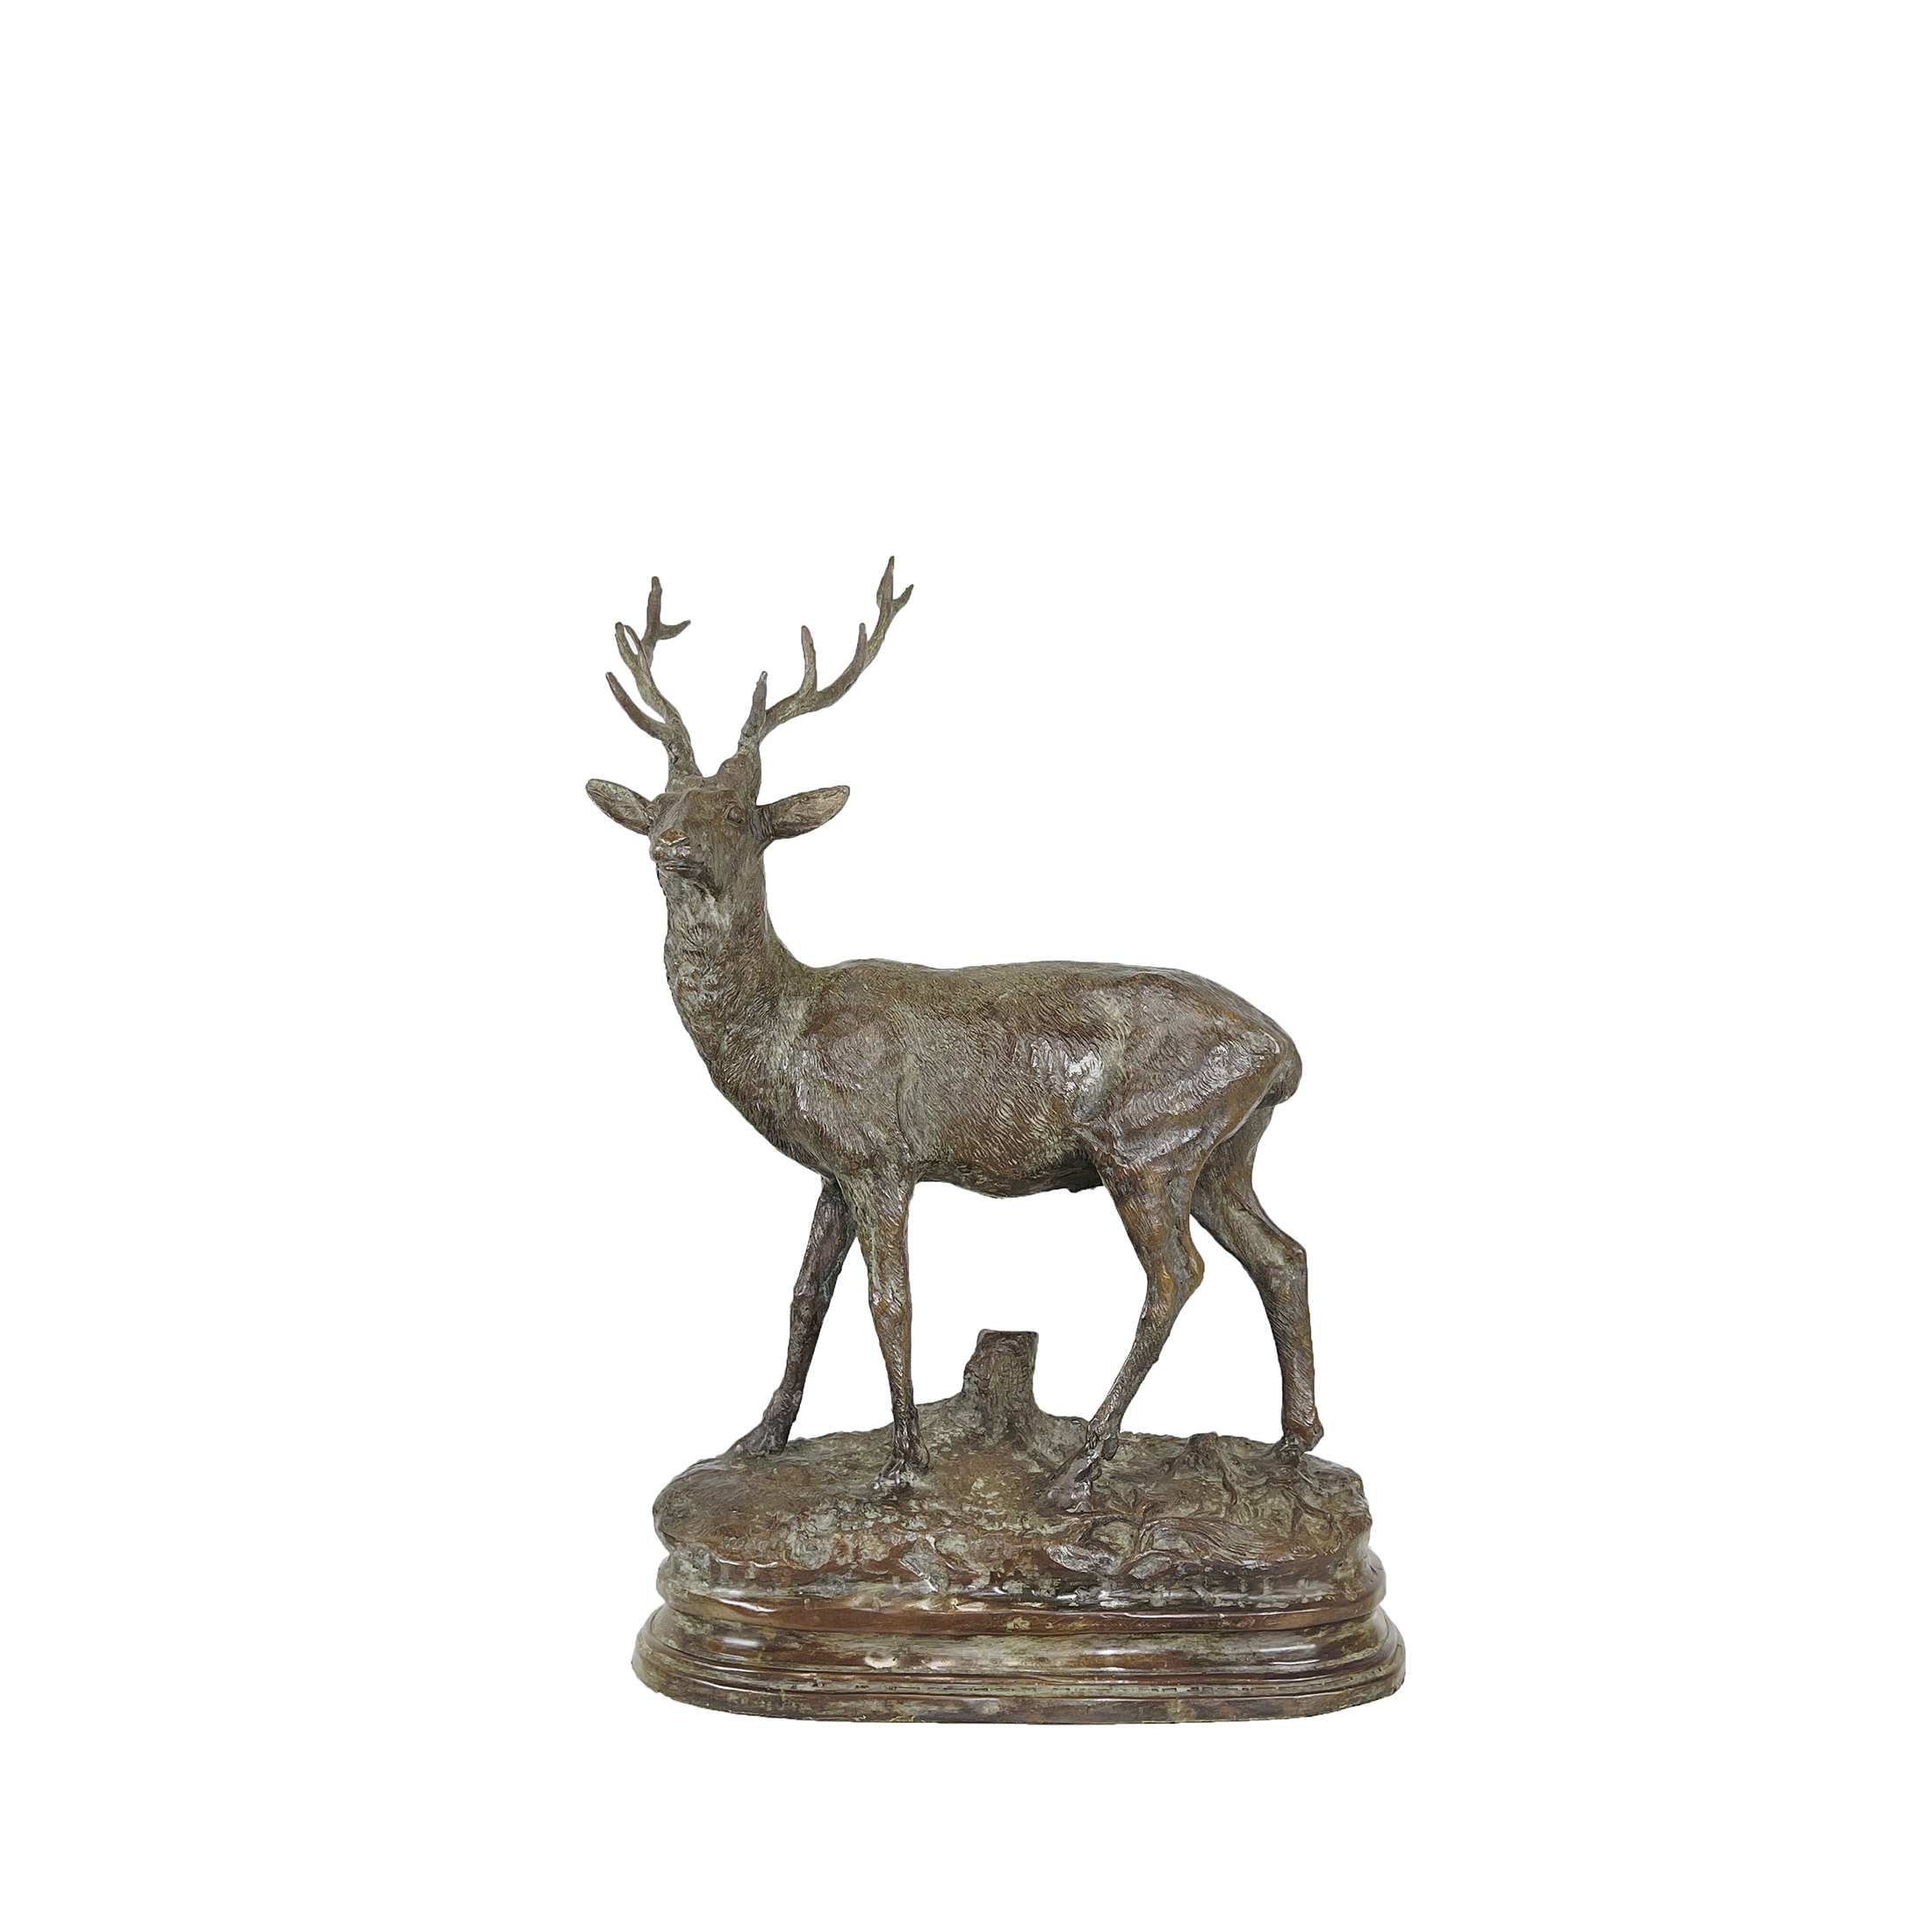 SRB56104 Bronze Deer on Base Table-top Sculpture by Metropolitan Galleries Inc.